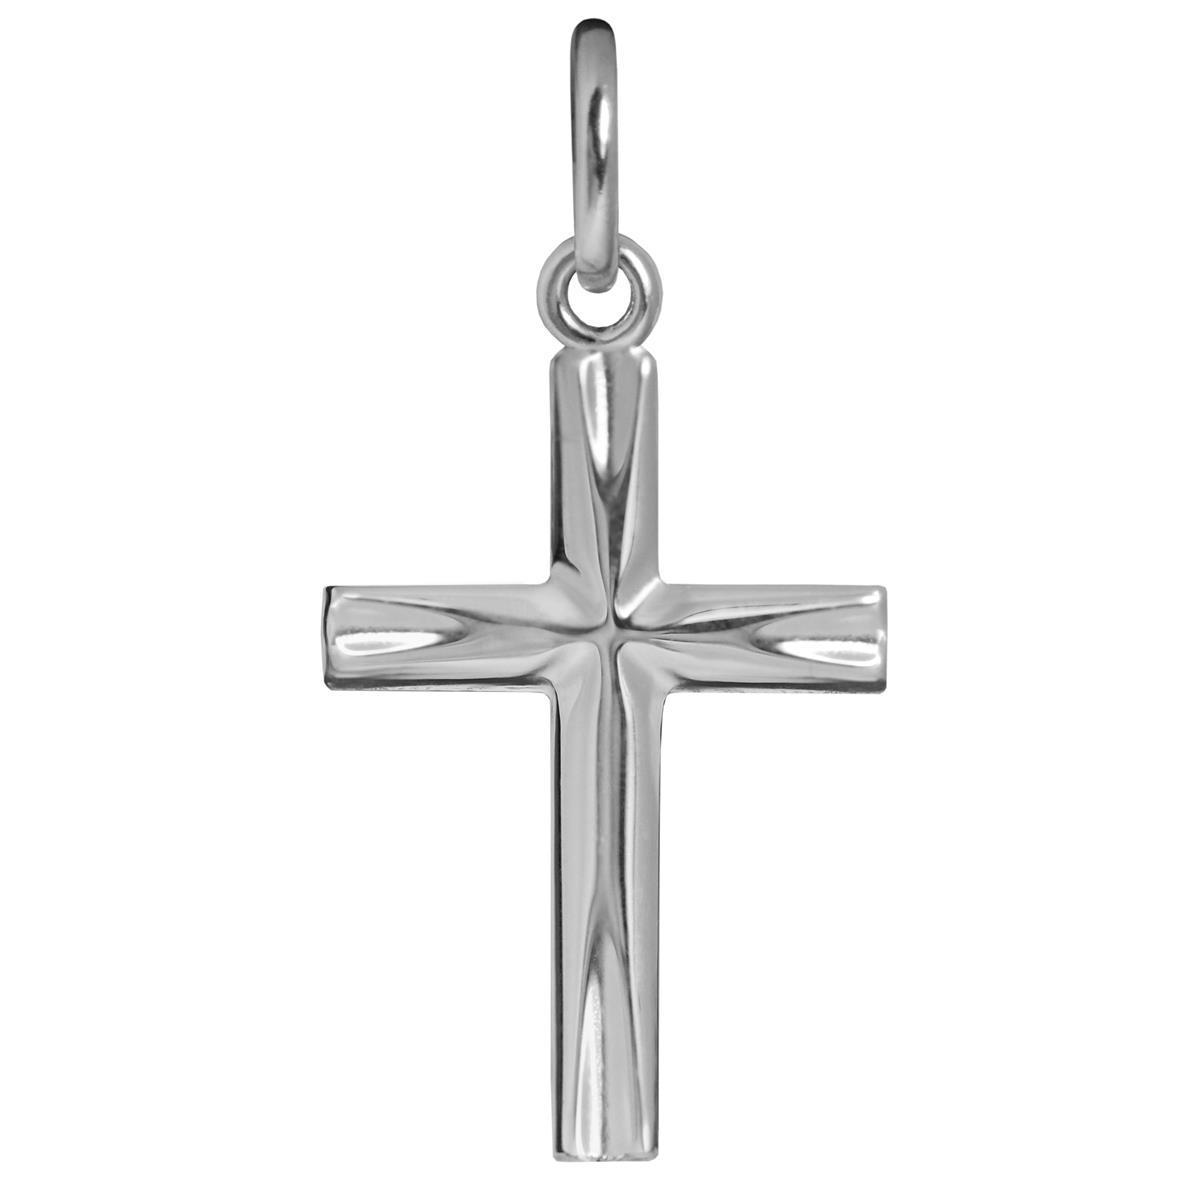 Silberner Anhänger feines Kreuz 17 mm glänzend Enden elegant eingekerbt Echt Silber 925